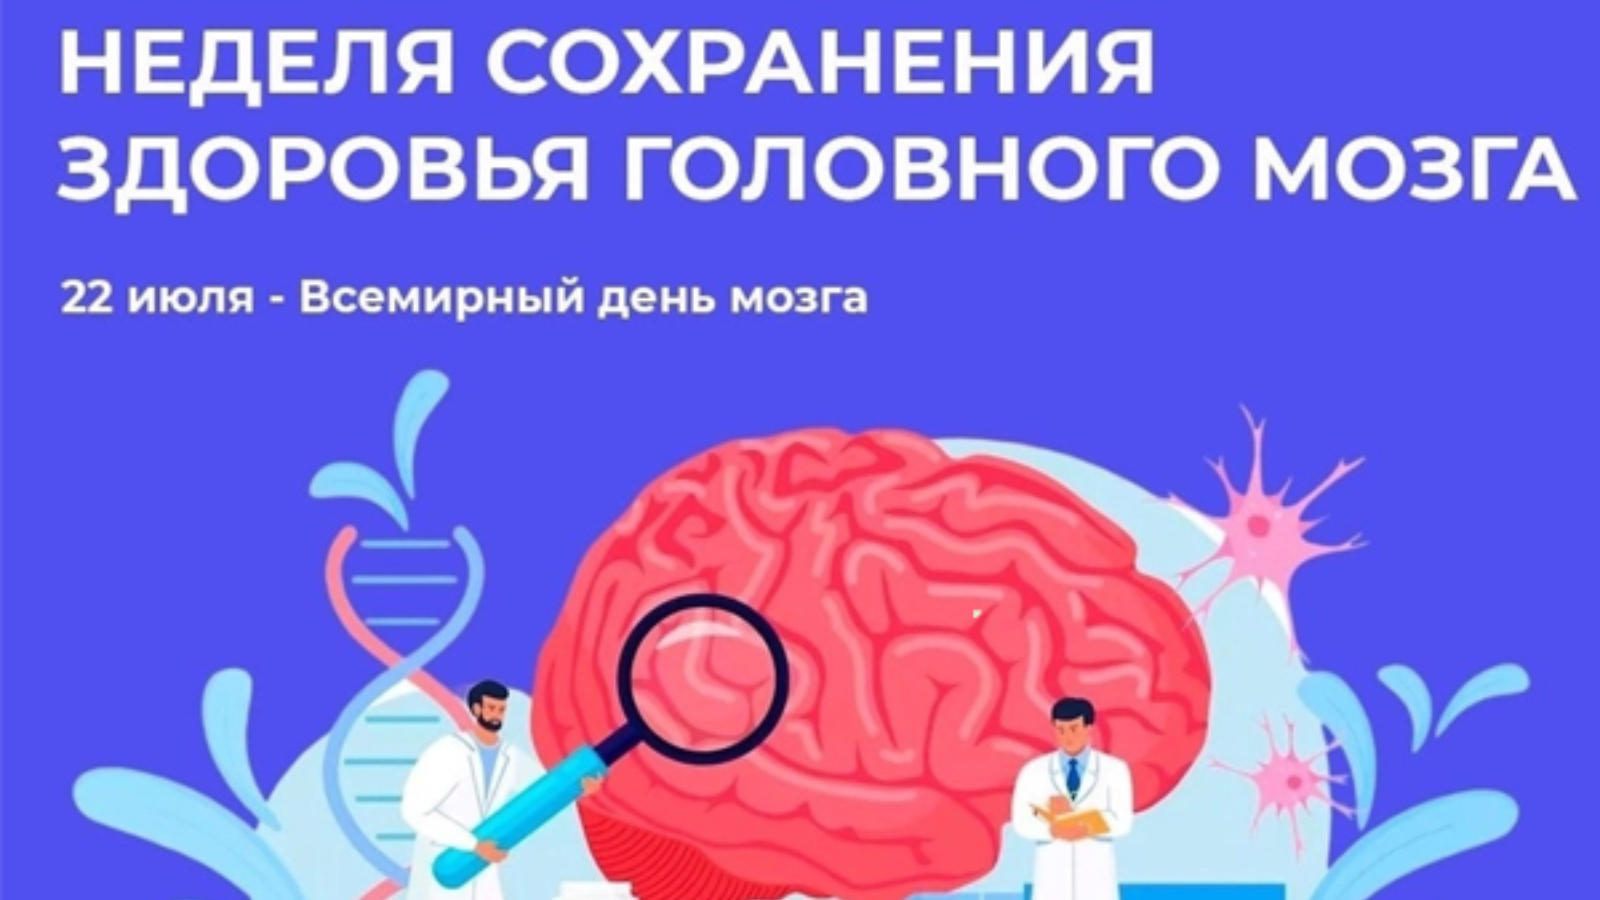 Brain 22. Всемирный день головного мозга. Неделя сохранения головного мозга. Неделя здоровья головного мозга. Неделя головного мозга инфографика.